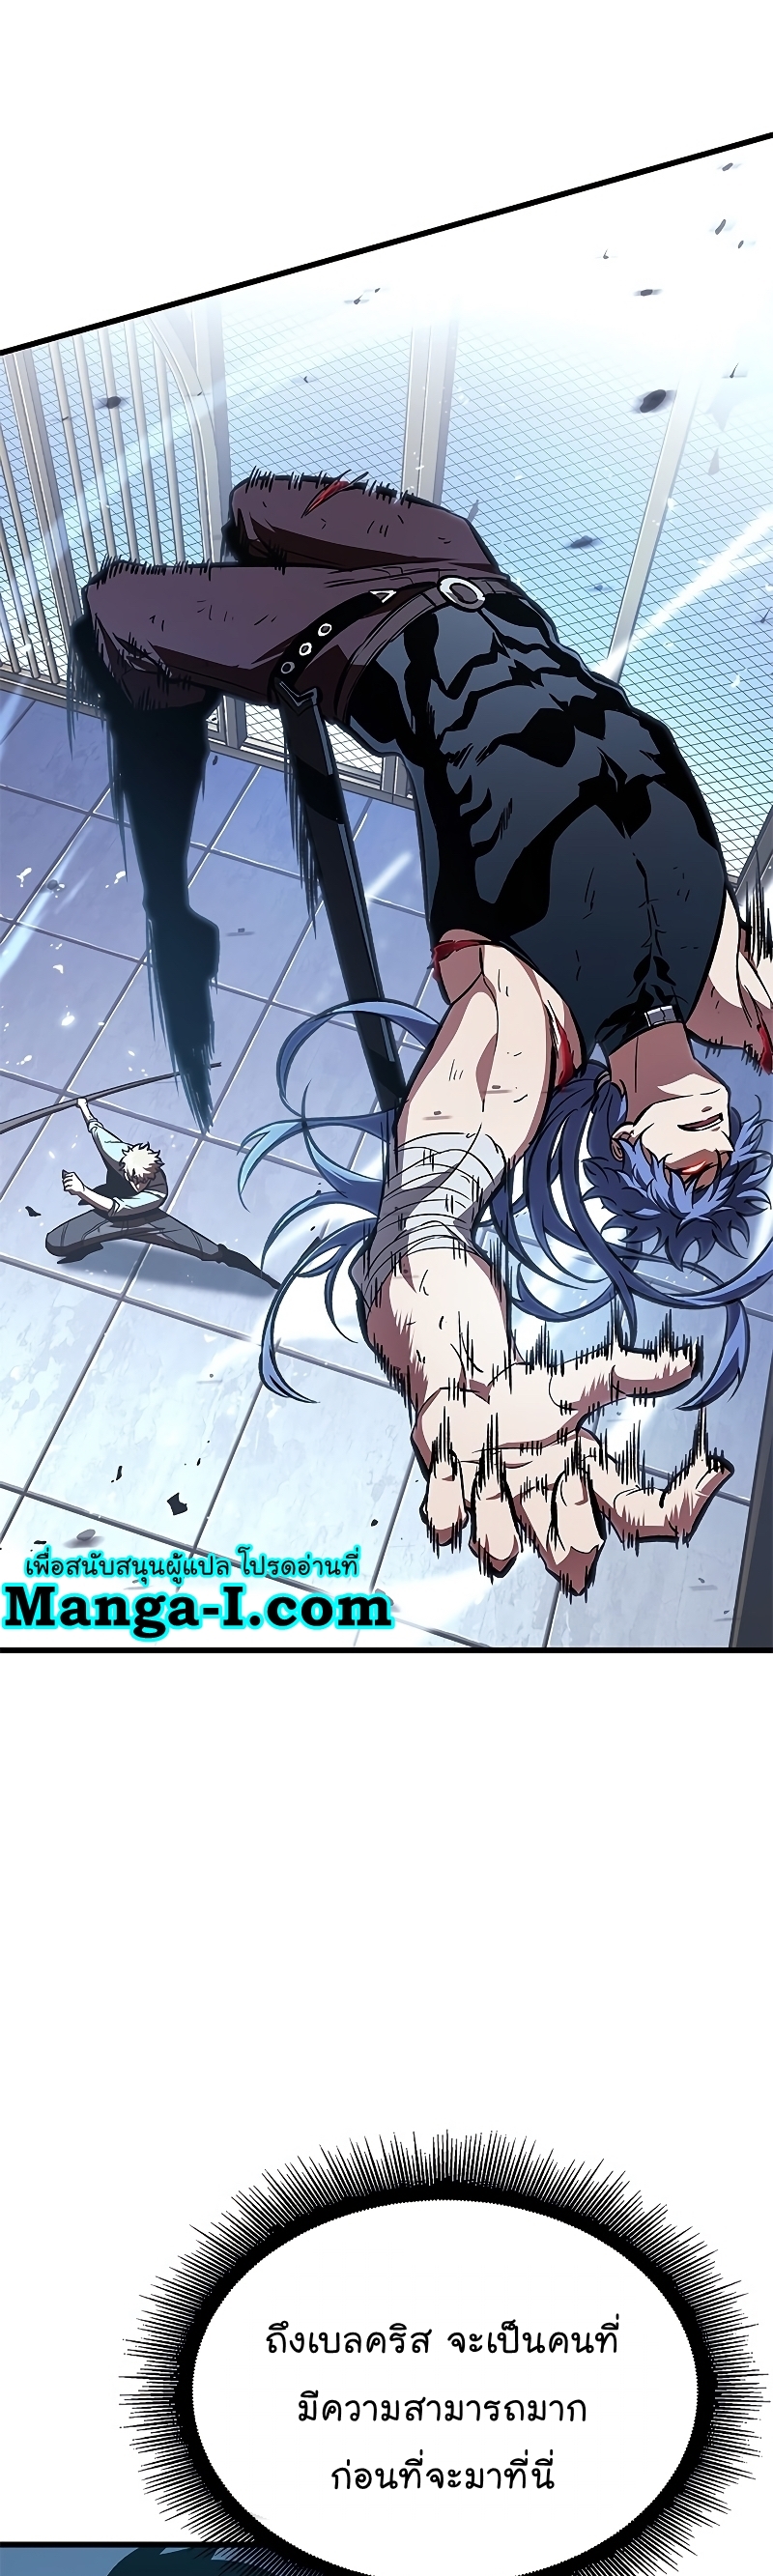 Manga I Manwha Pick Me 63 (11)